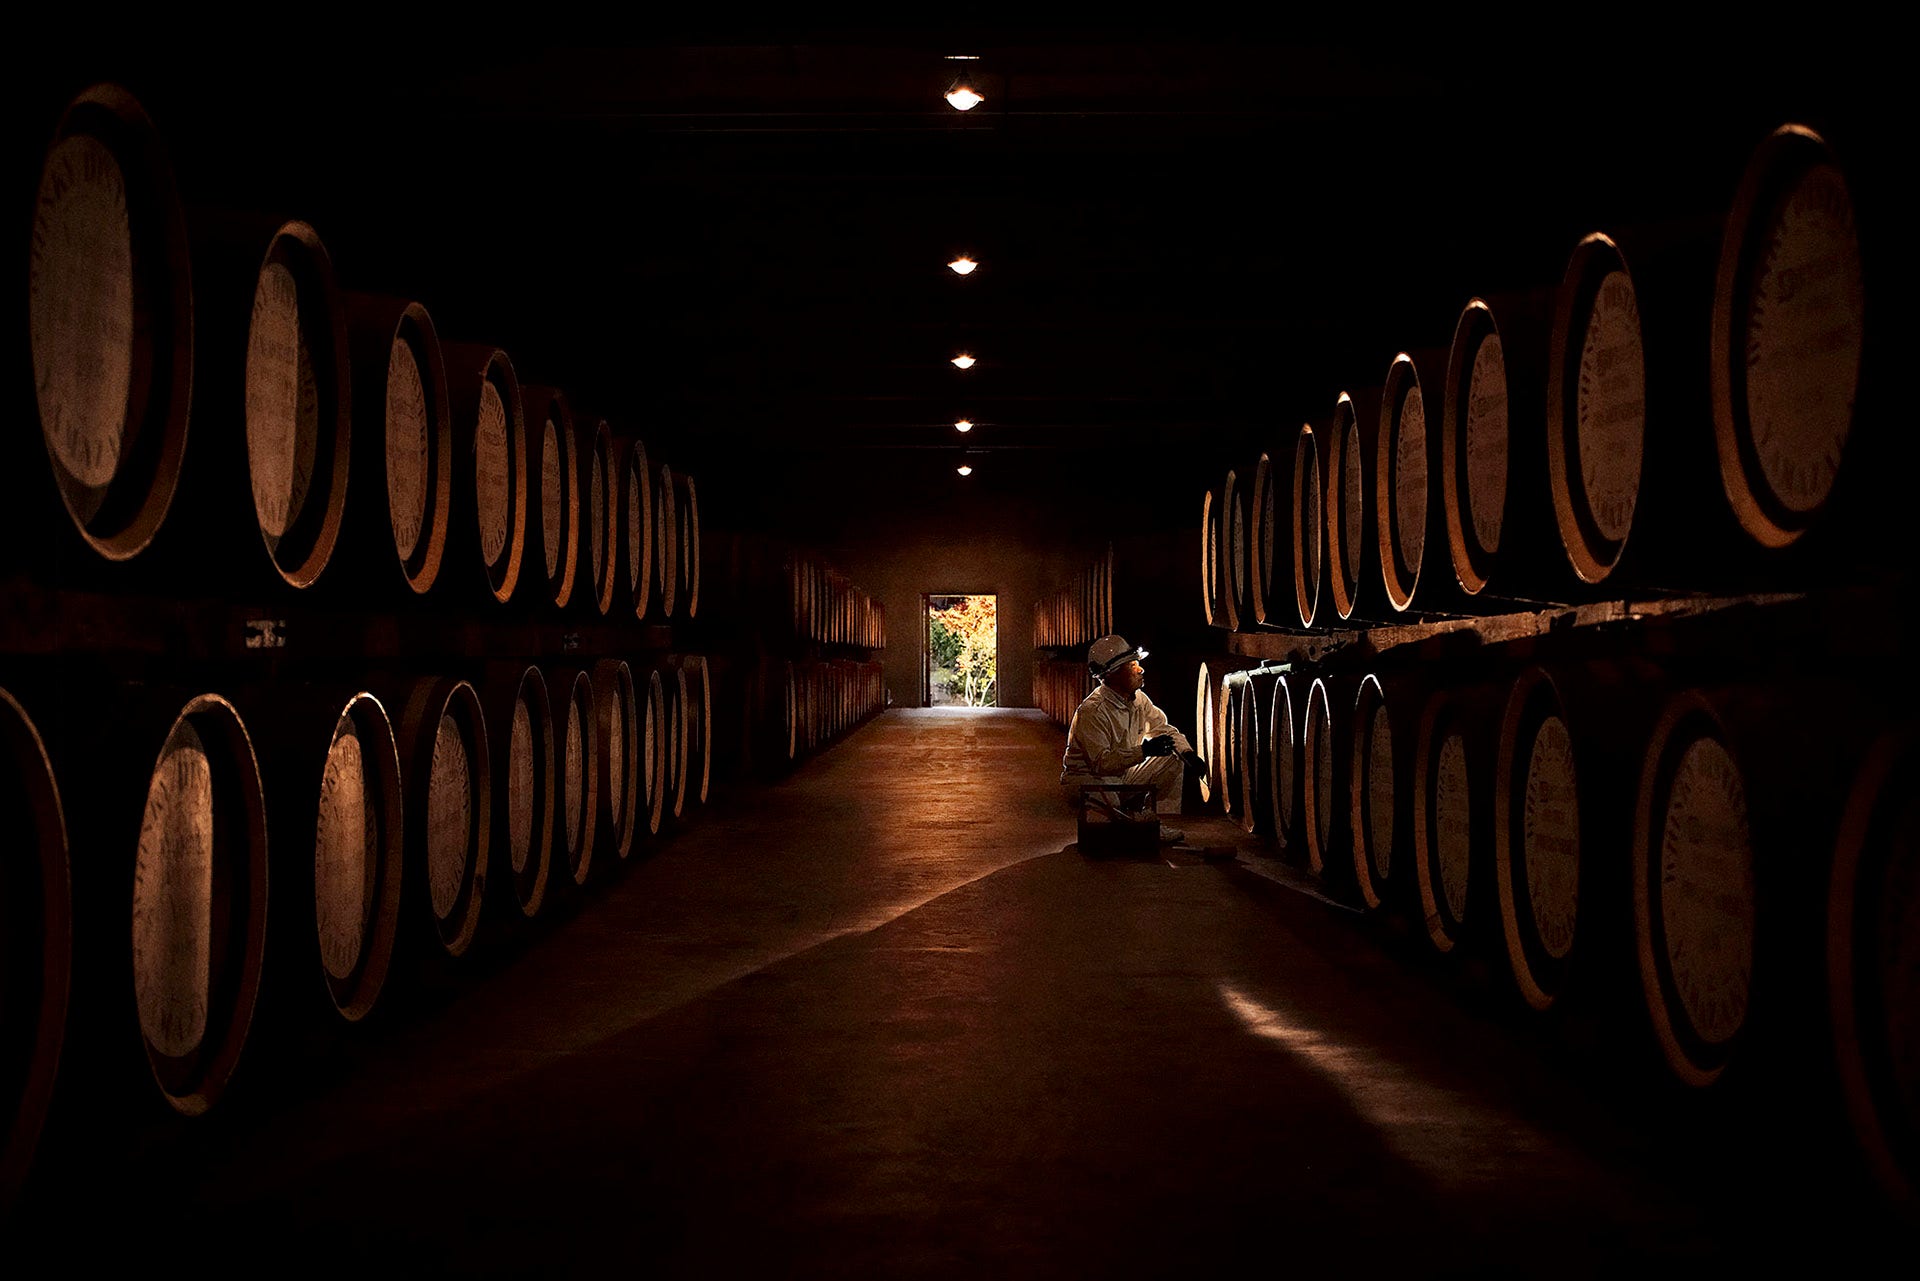 Dark shot of barrels with a door in the background